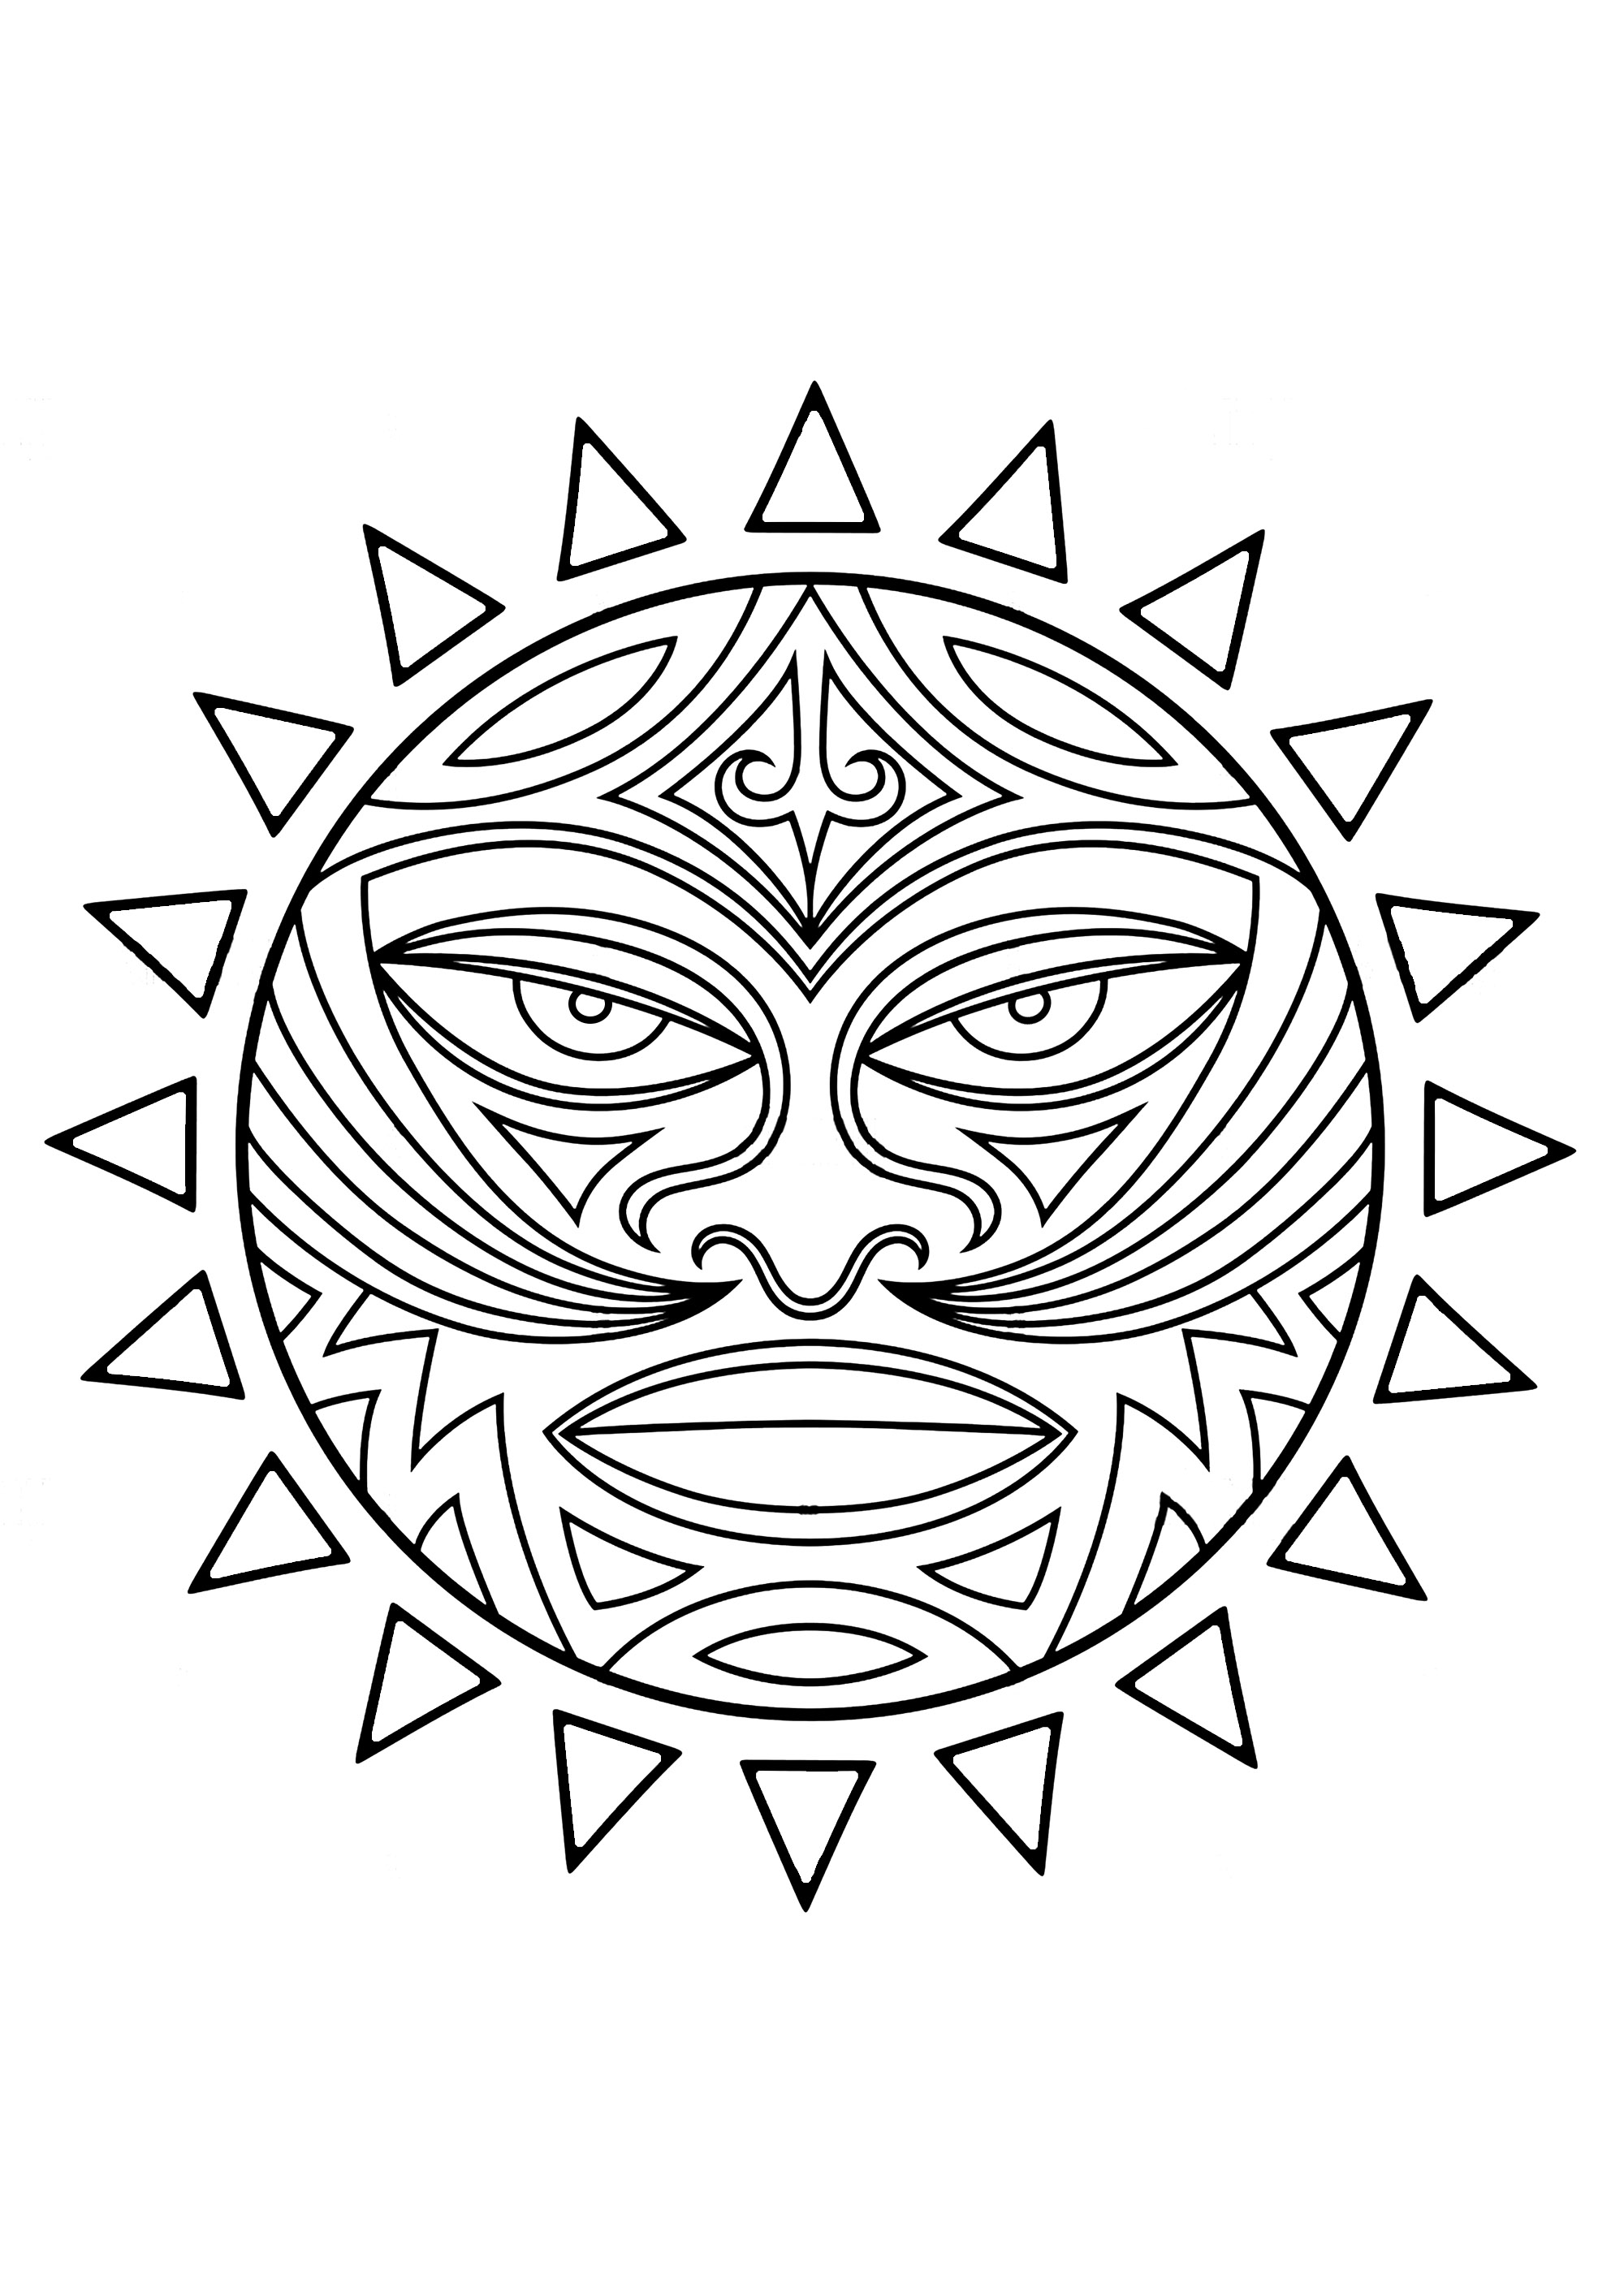 Tiki: Maori / Polynesisches Symbol. Der Tiki, halb Mensch, halb Gott, symbolisiert eine mythische Figur, die nach den Bräuchen und dem Glauben der polynesischen Völker die Menschen geboren hat. In der Vergangenheit wurden sie von den Polynesiern verehrt und gefürchtet. Diese Darstellung in Form eines Gesichts in einem Kreis kann Gegenstand einer Maori-Tätowierung sein.